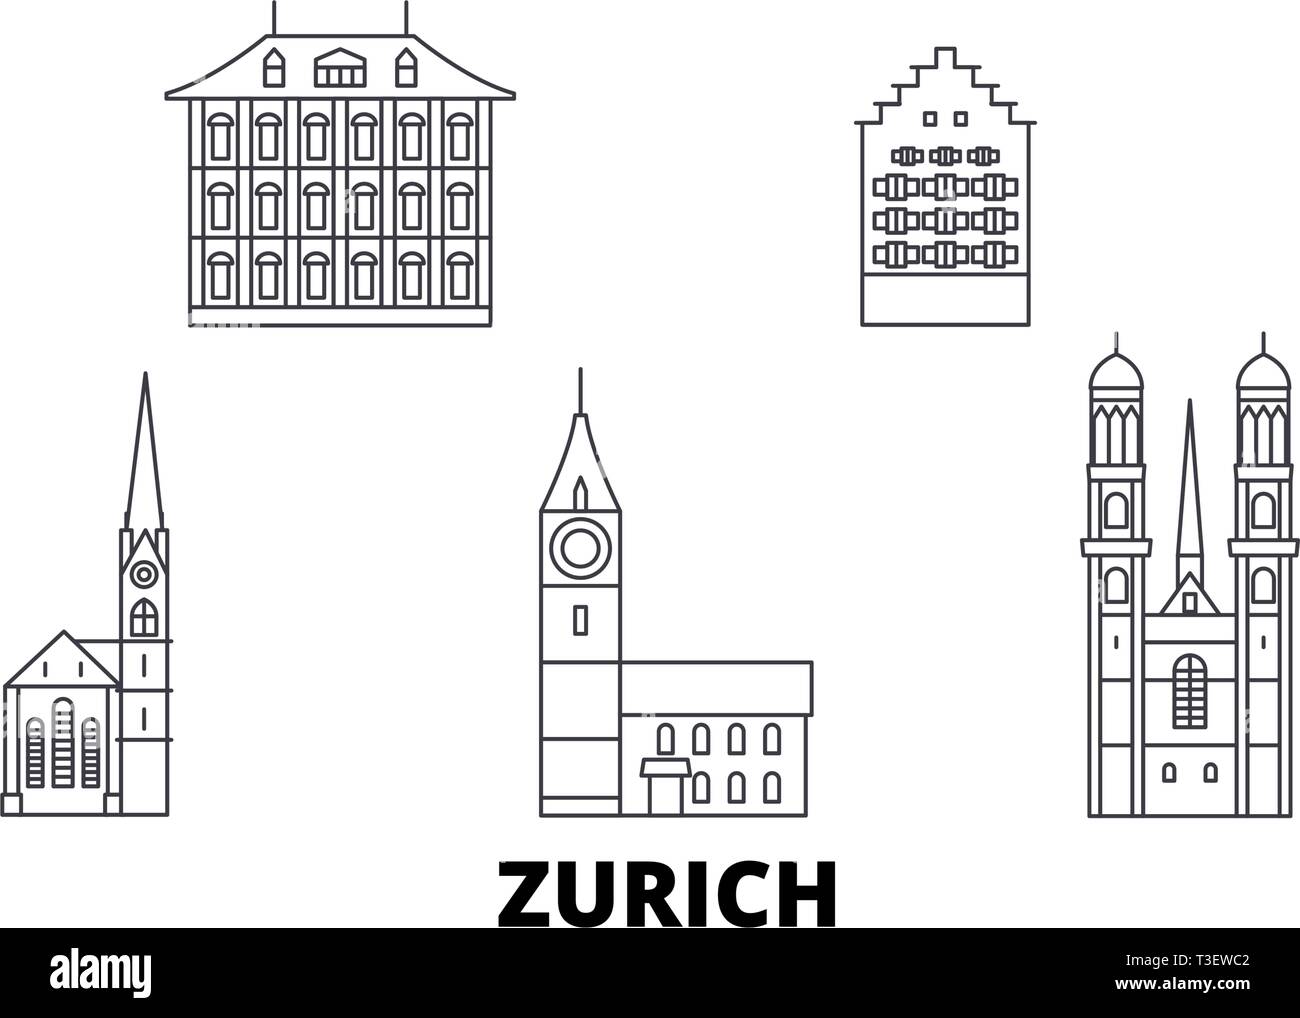 Switzerland, Zurich line travel skyline set. Switzerland, Zurich outline  city vector illustration, symbol, travel sights, landmarks Stock Vector  Image & Art - Alamy